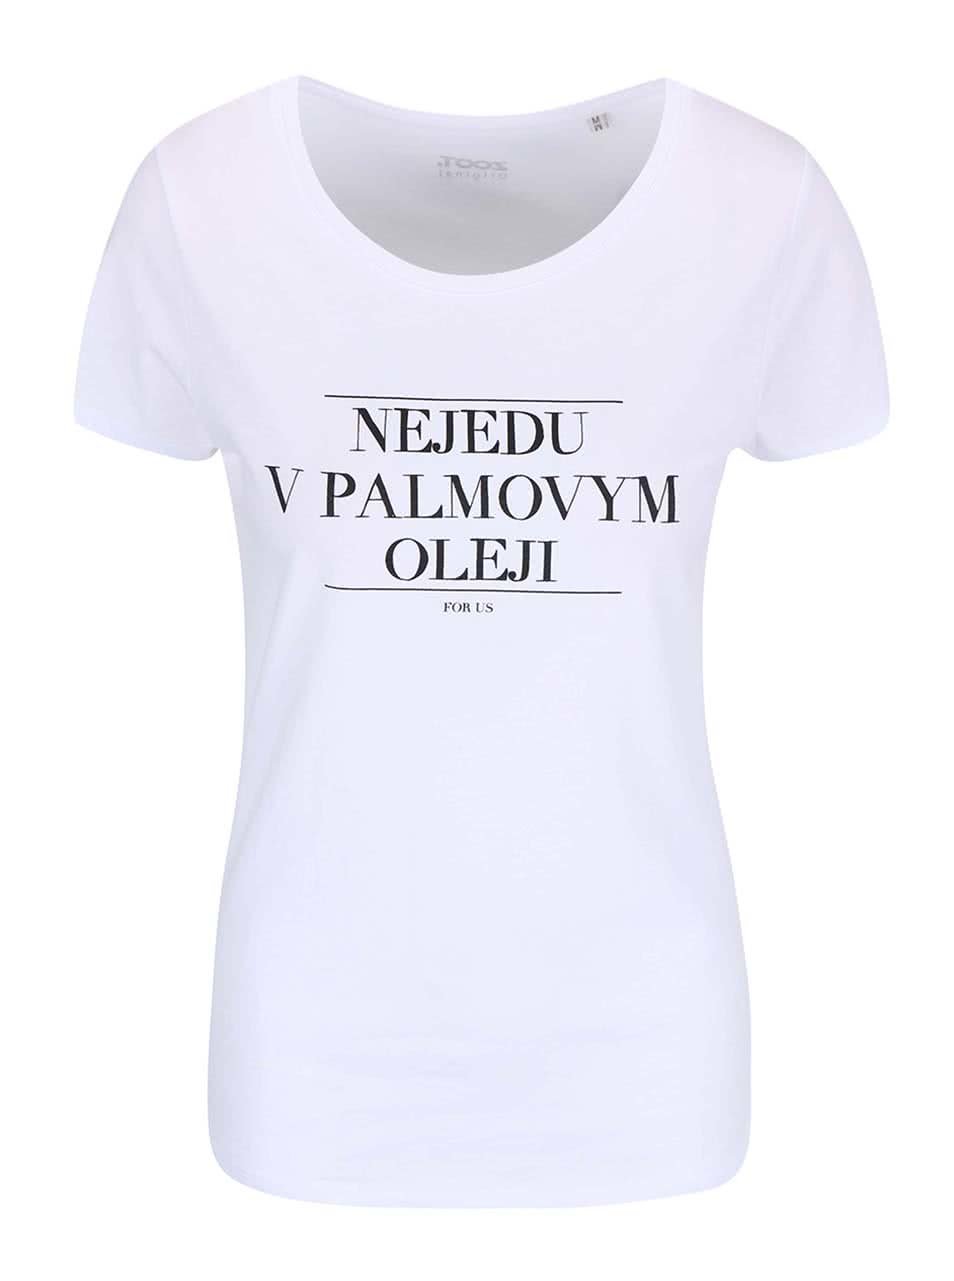 Bílé dámské tričko ZOOT Originál Nejedu v palmovym oleji